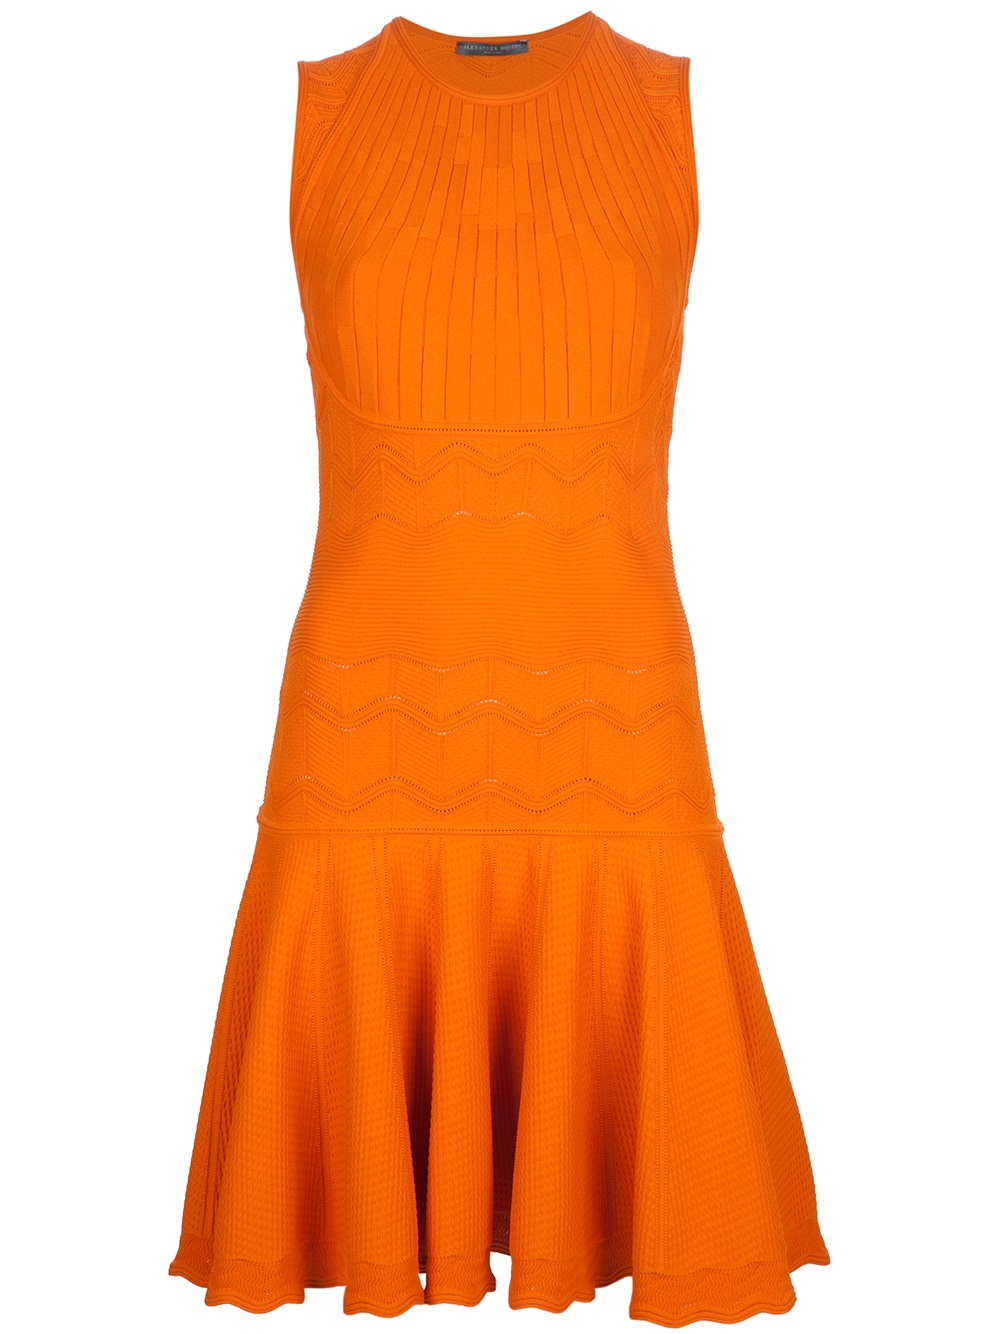 Alexander mcqueen Wavy Knit Dress in Orange | Lyst